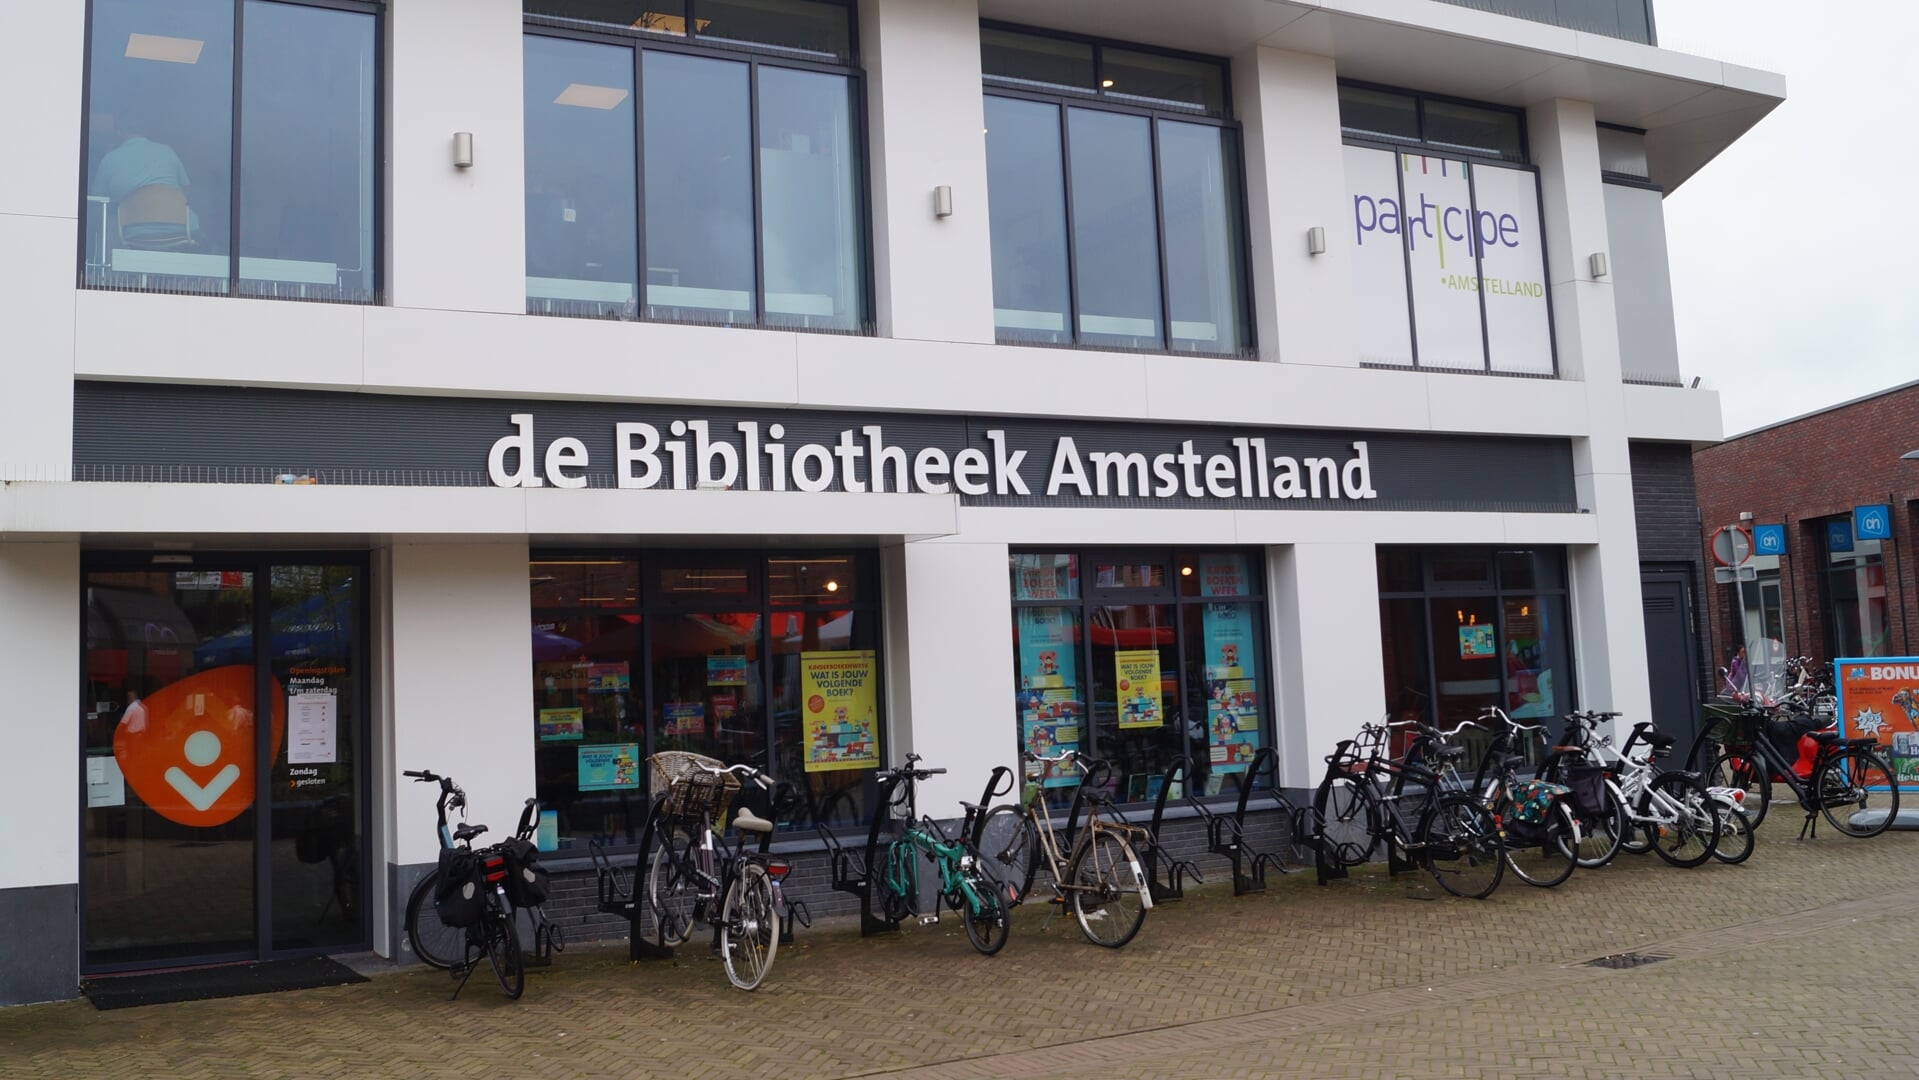 De fietsenrekken bij Bibliotheek Westwijk zijn volgens de gemeente verwijderd om verwarring te voorkomen. Fietsen is in verband met de verkeersveiligheid verboden op het plein.